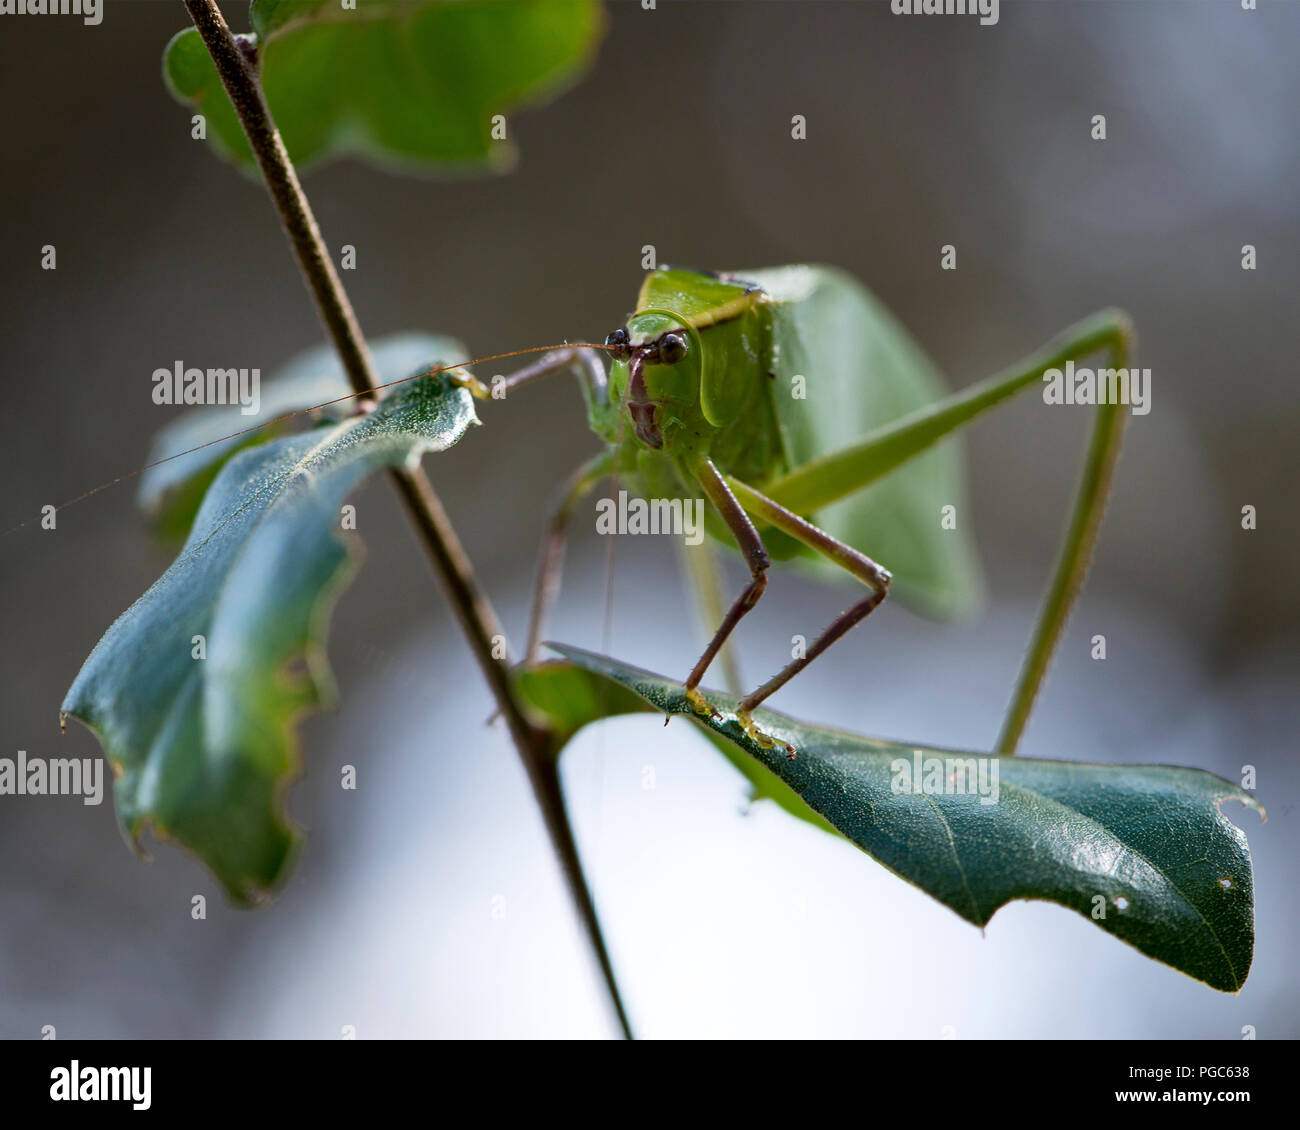 Katydid Insekt auf einen grünen Zweig mit einem Camouflage anzeigen seine grüne Farbe, Antennen, Augen, in der Umwelt und Umgebung. Foto. Bild. Stockfoto